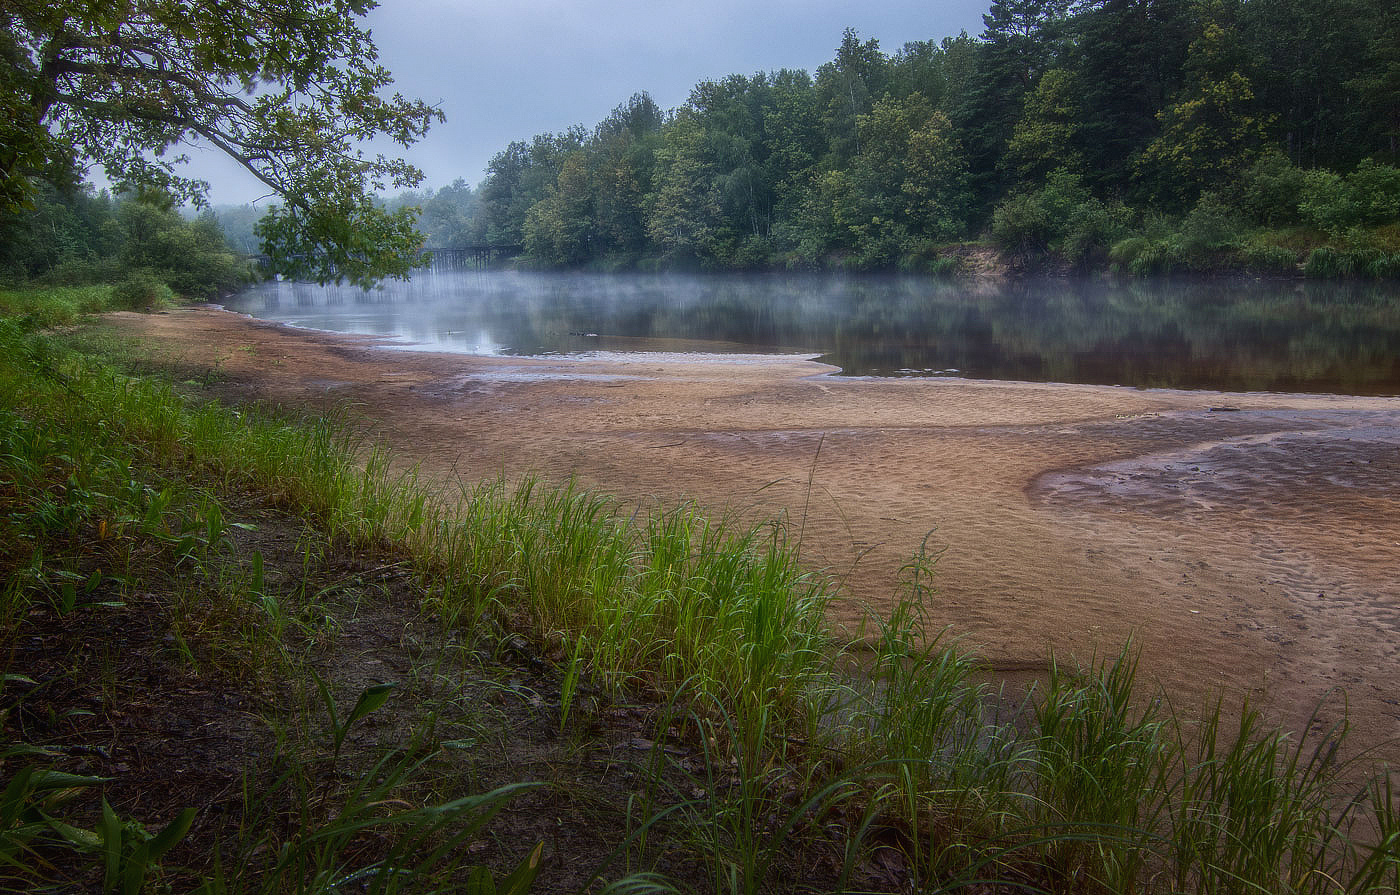 Утренний туманчик стелется над рекой. река берег туман над рекой трудно доступные места утро после дождя